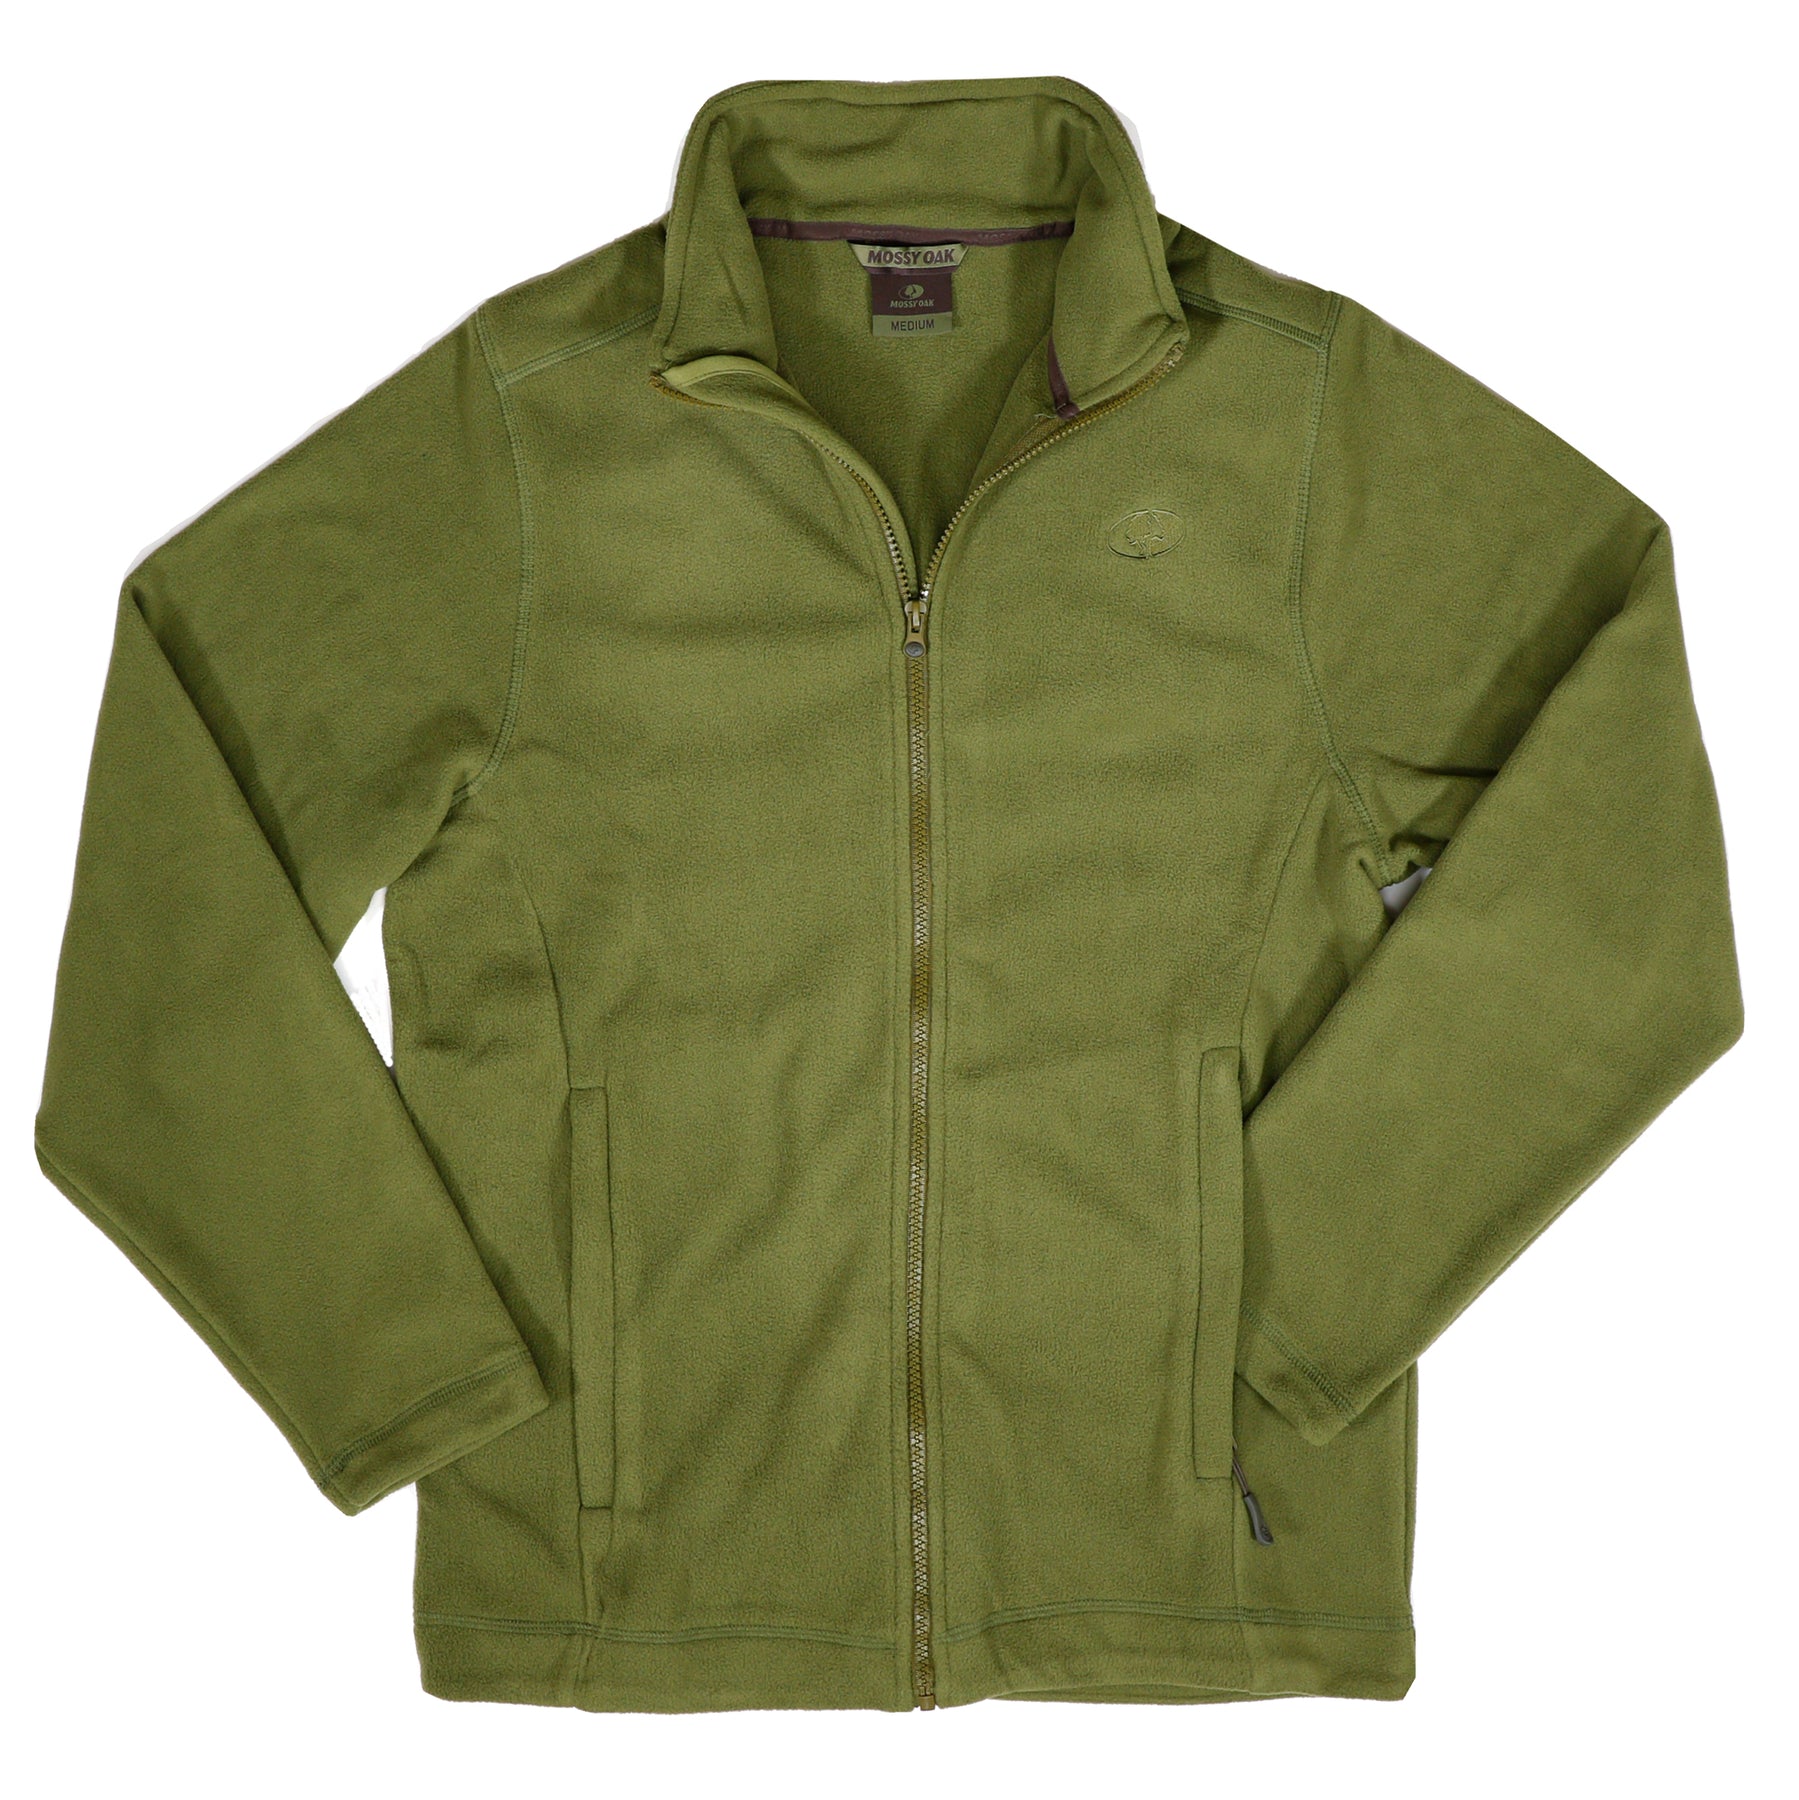 Polarfleece Jacket – The Mossy Oak Store